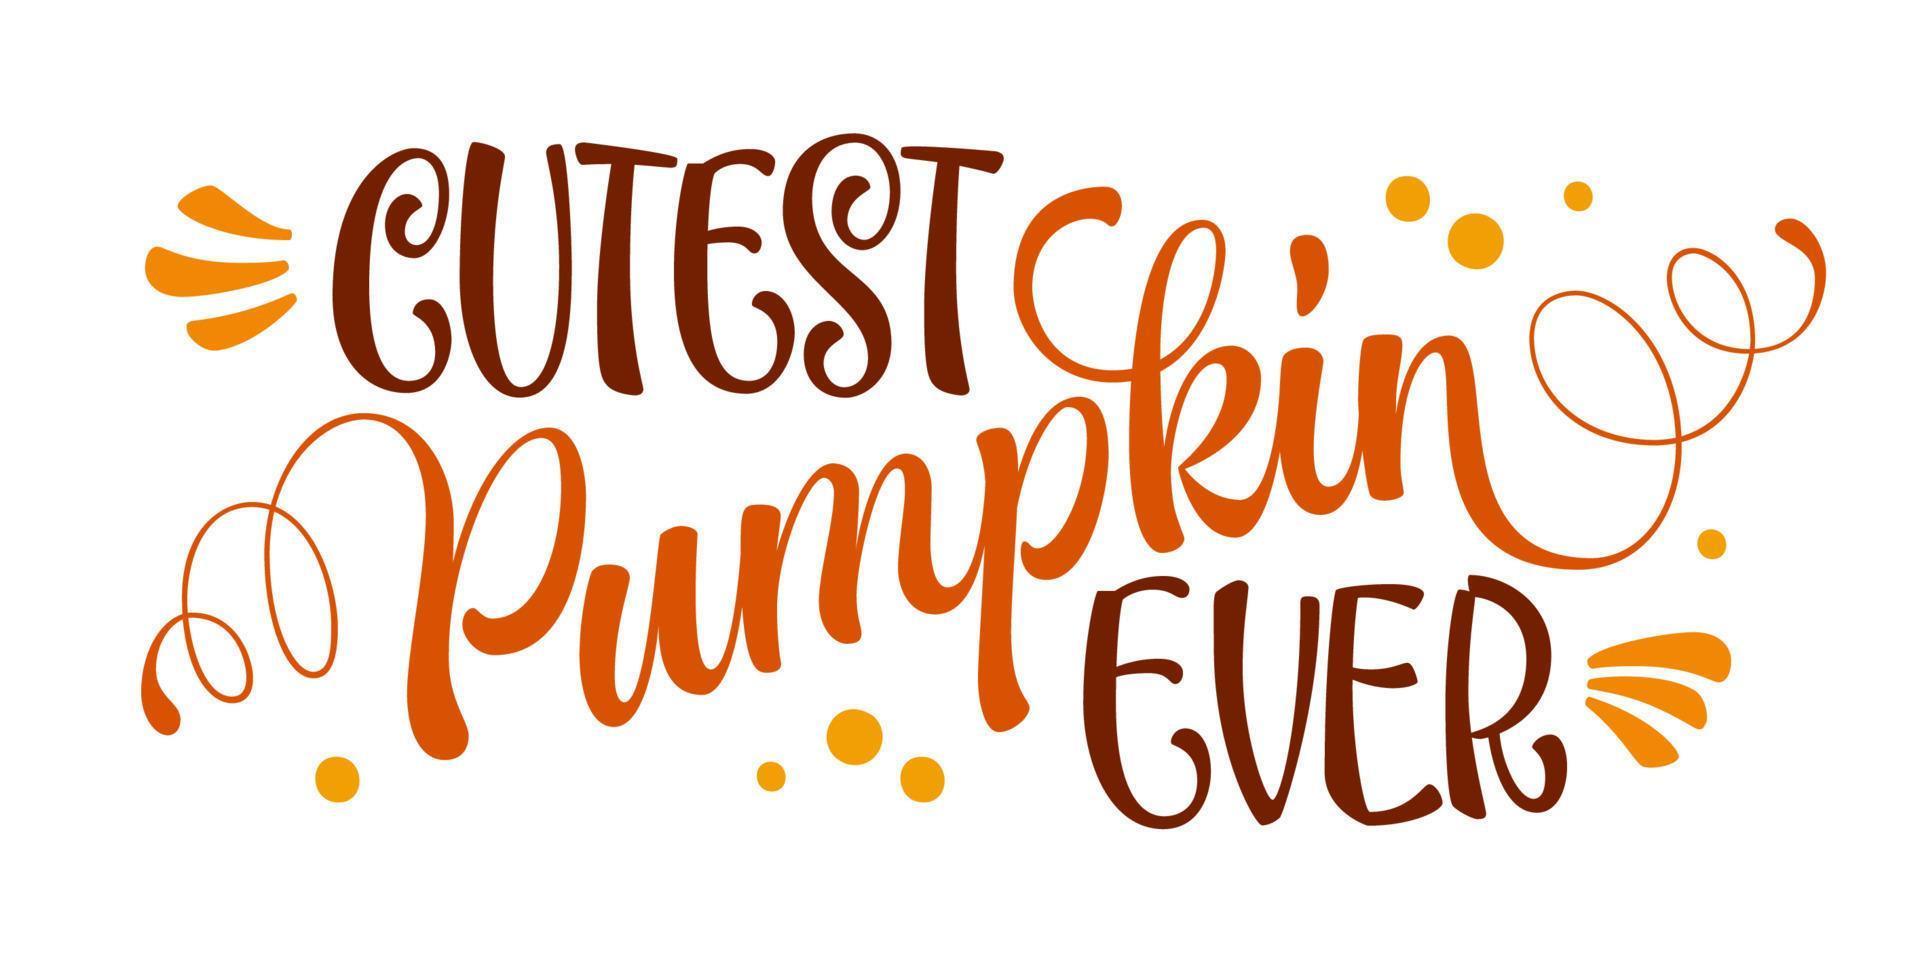 La calabaza más linda de todas: frase de letras modernas dibujadas a mano para decoraciones de eventos de otoño. vector